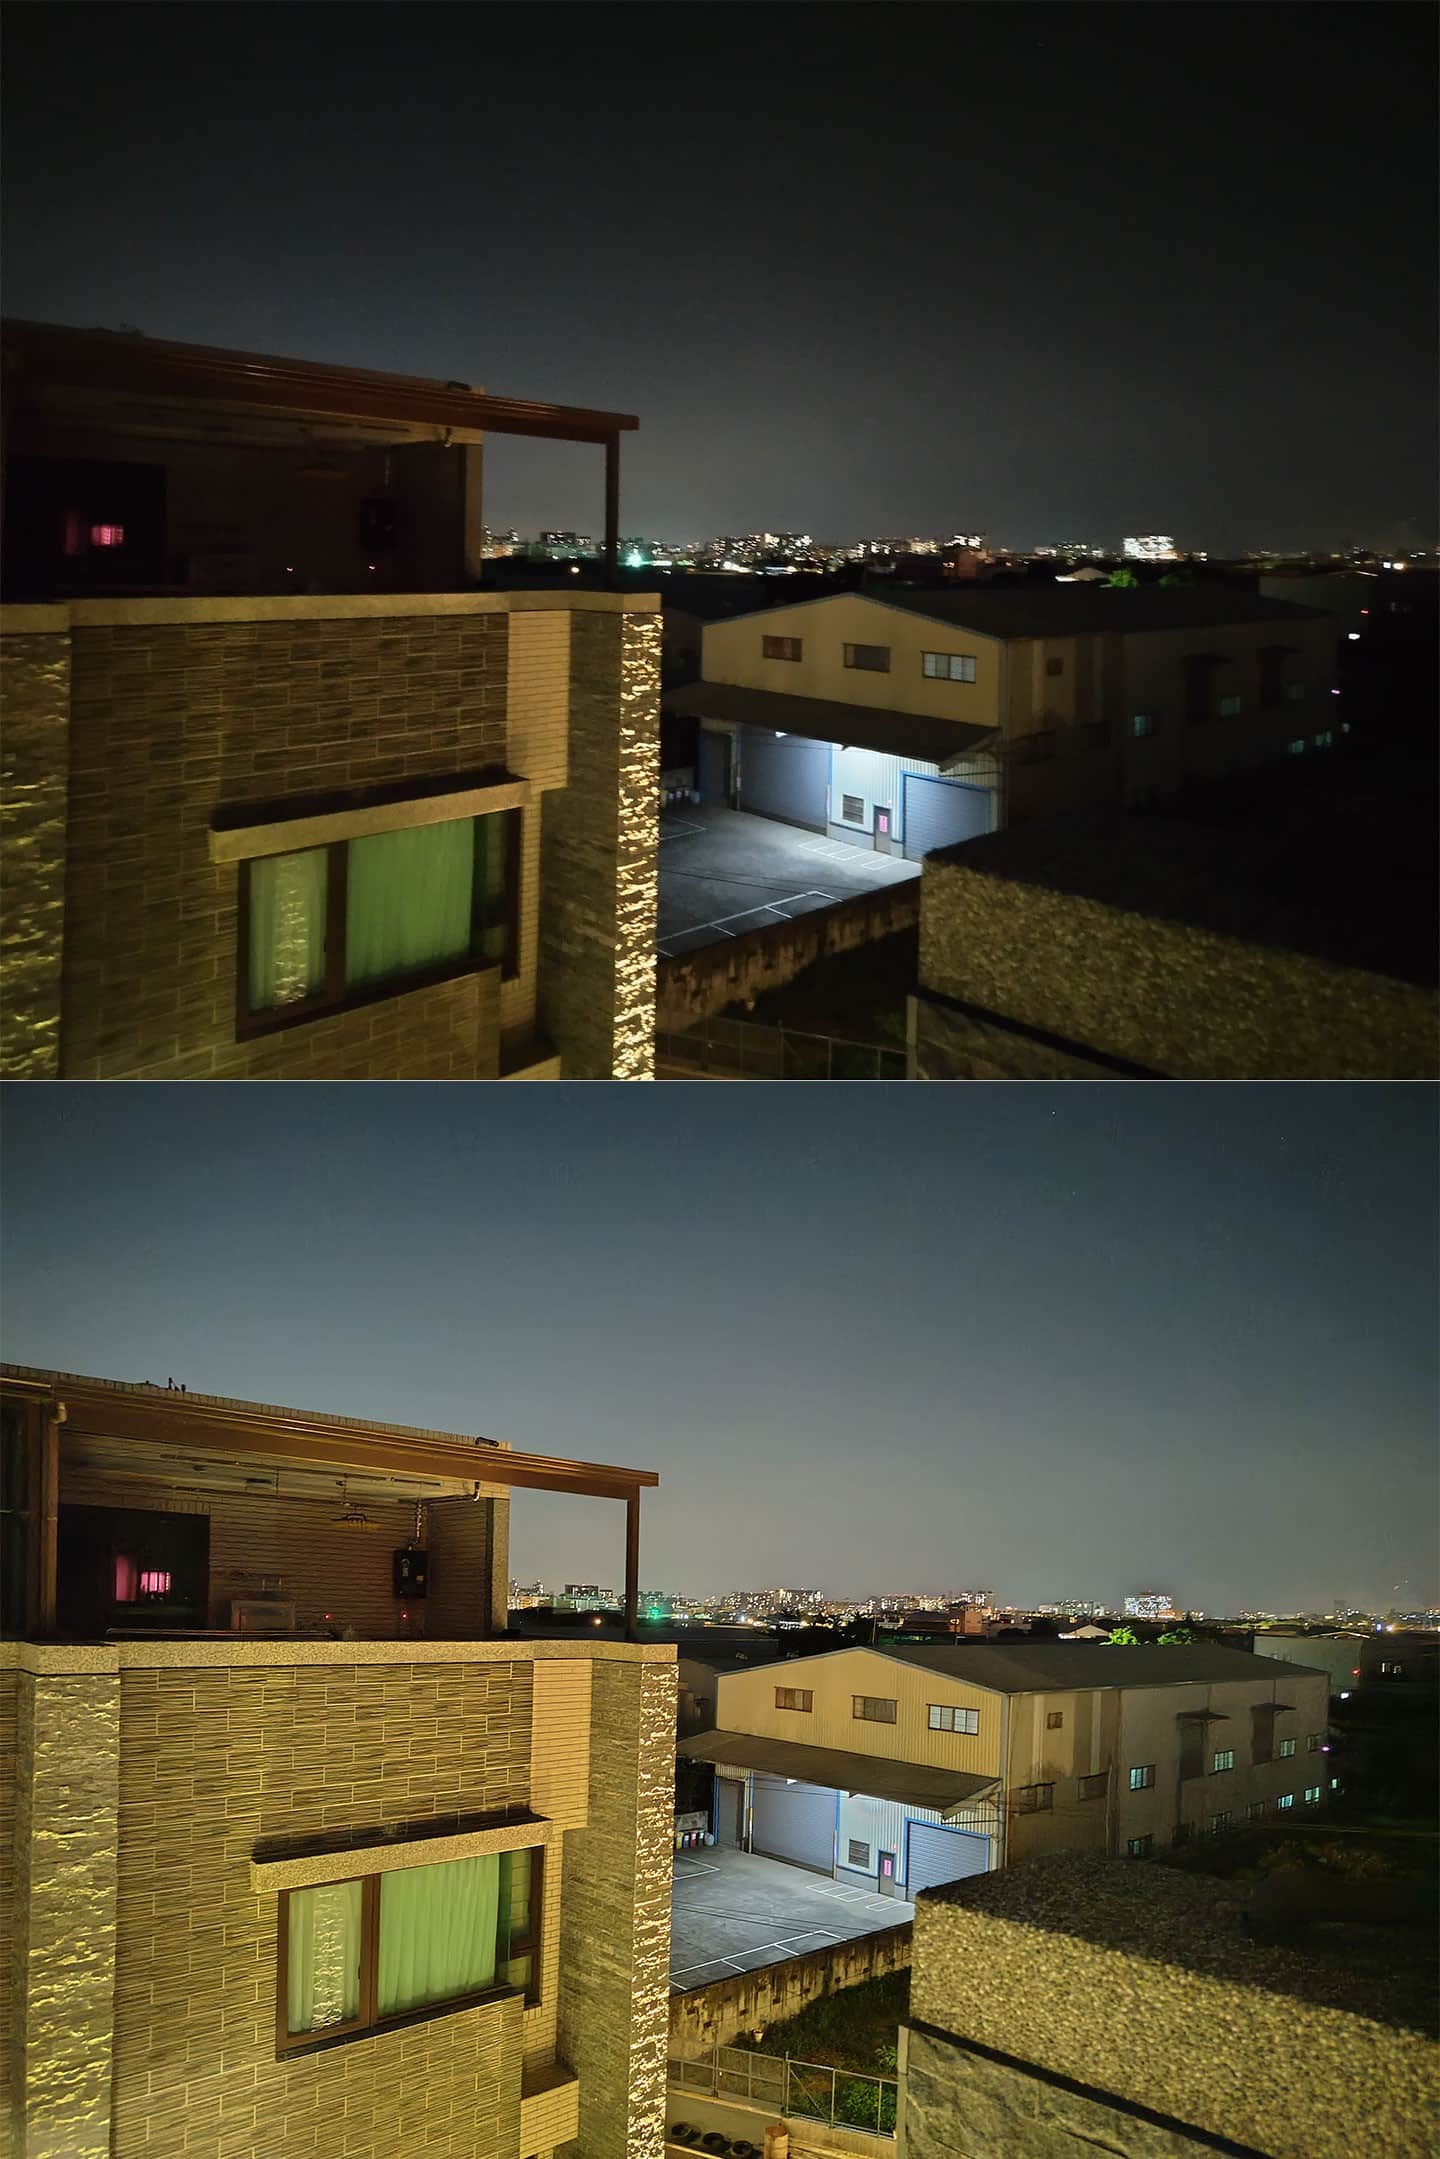 接下來嘗試在偏暗的夜間場景測試，圖上是以一般模式拍攝（未開AI場景辨），圖下是以夜間模式拍攝，兩相對比下可見極暗處亮度的提升與細節還原度都還不錯。